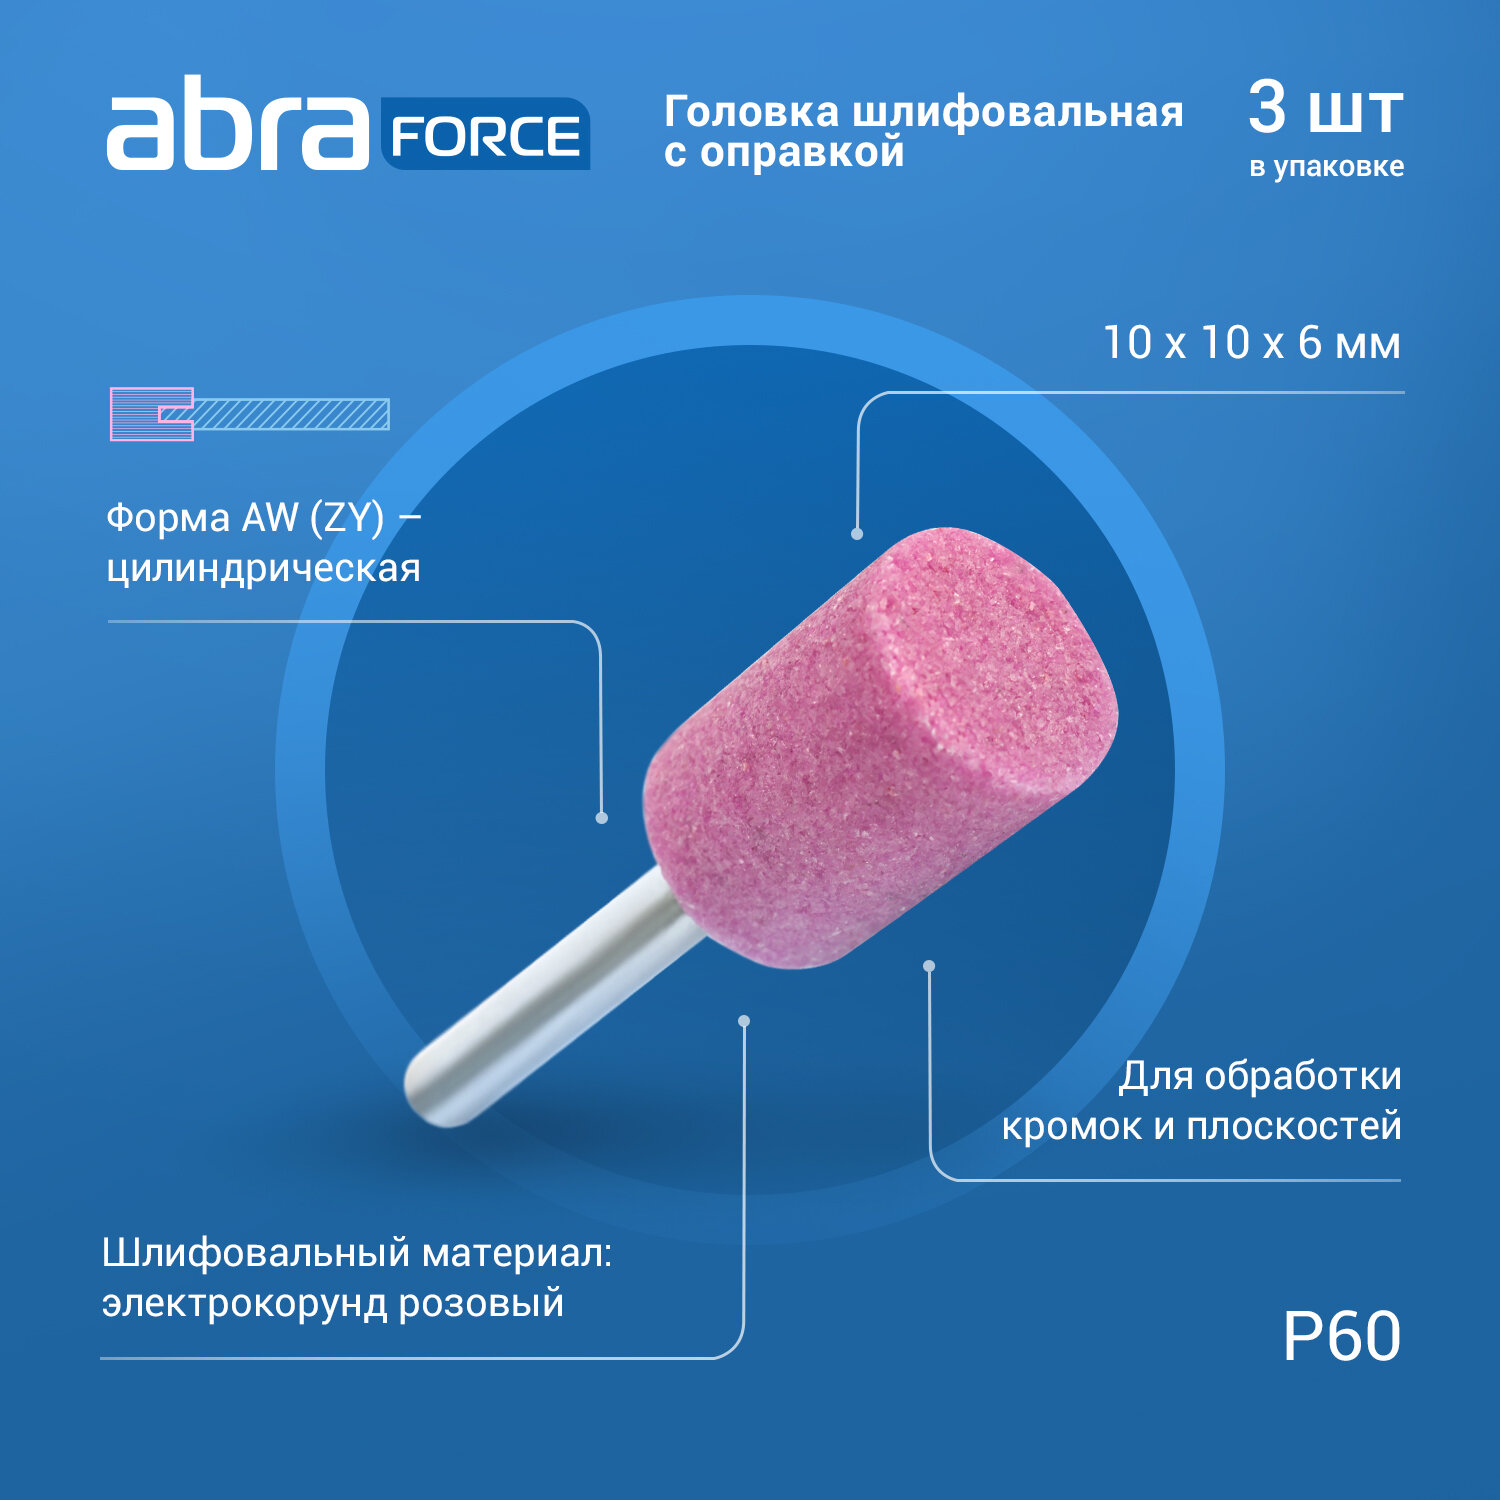 Головка шлифовальная с оправкой AW (ZY) 10x10x6 P60 розовая ABRAforce (упаковка 3штуки)